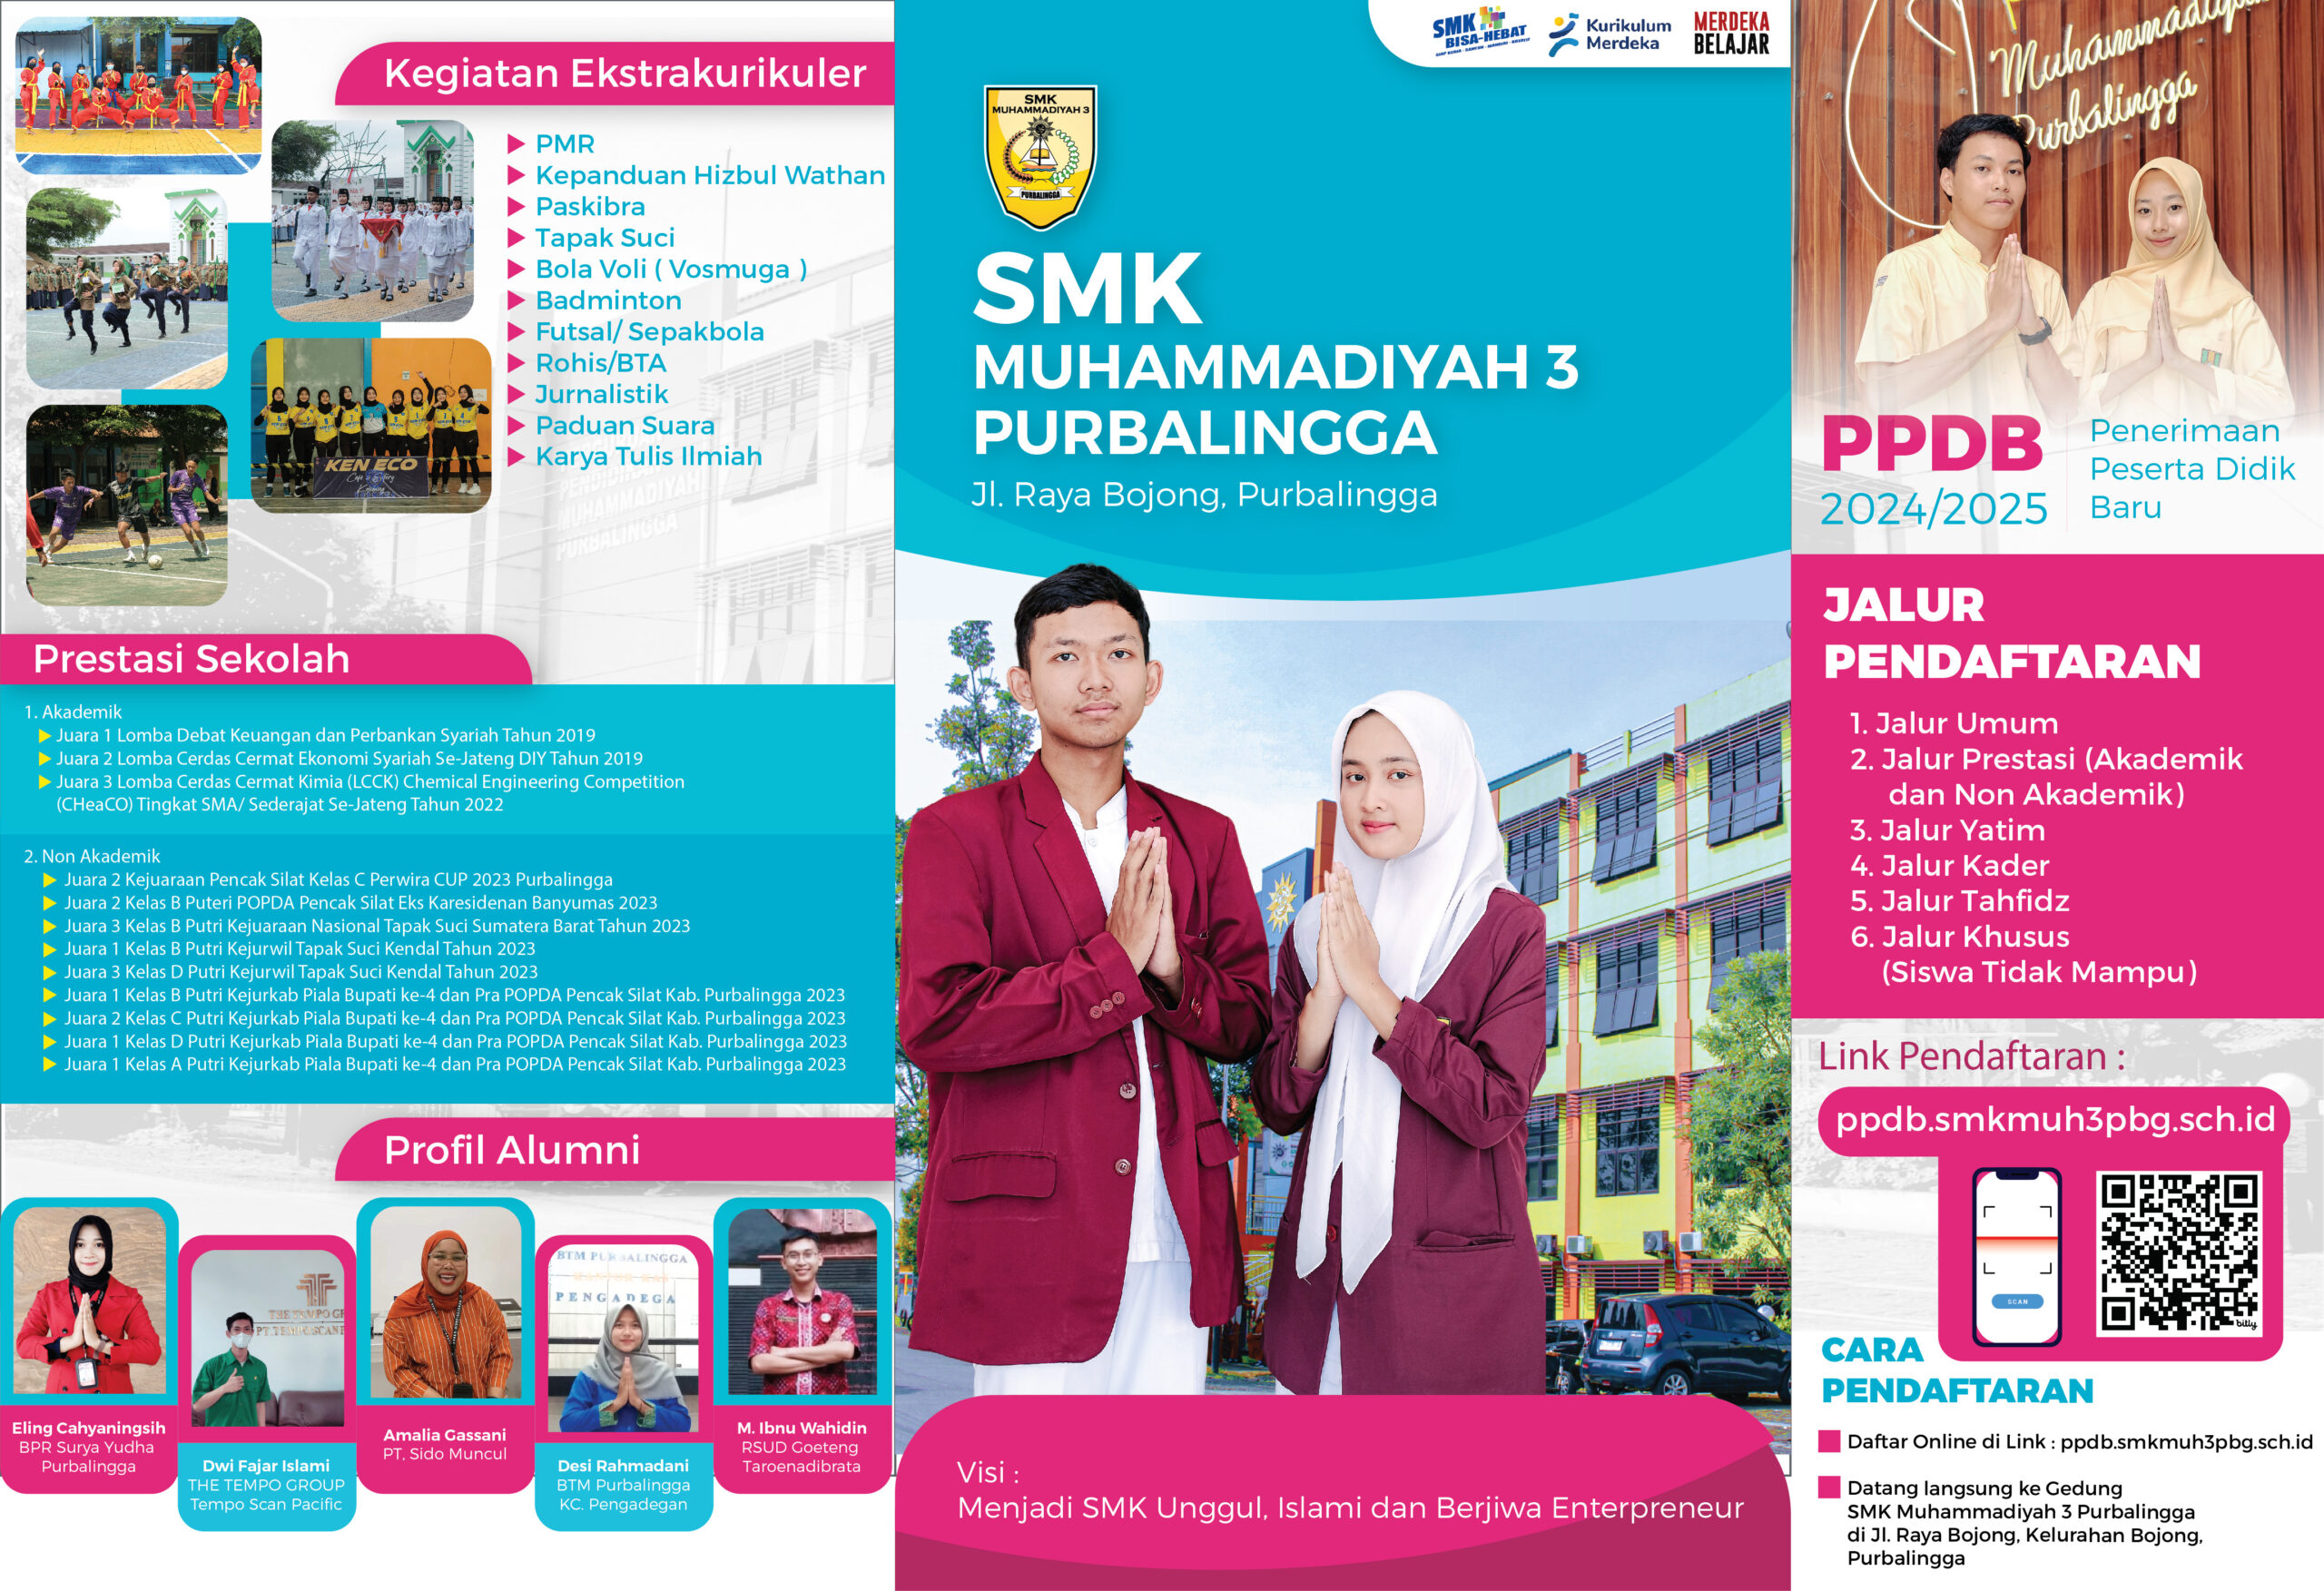 Info PPDB SMK Muhammadiyah 3 Purbalingga